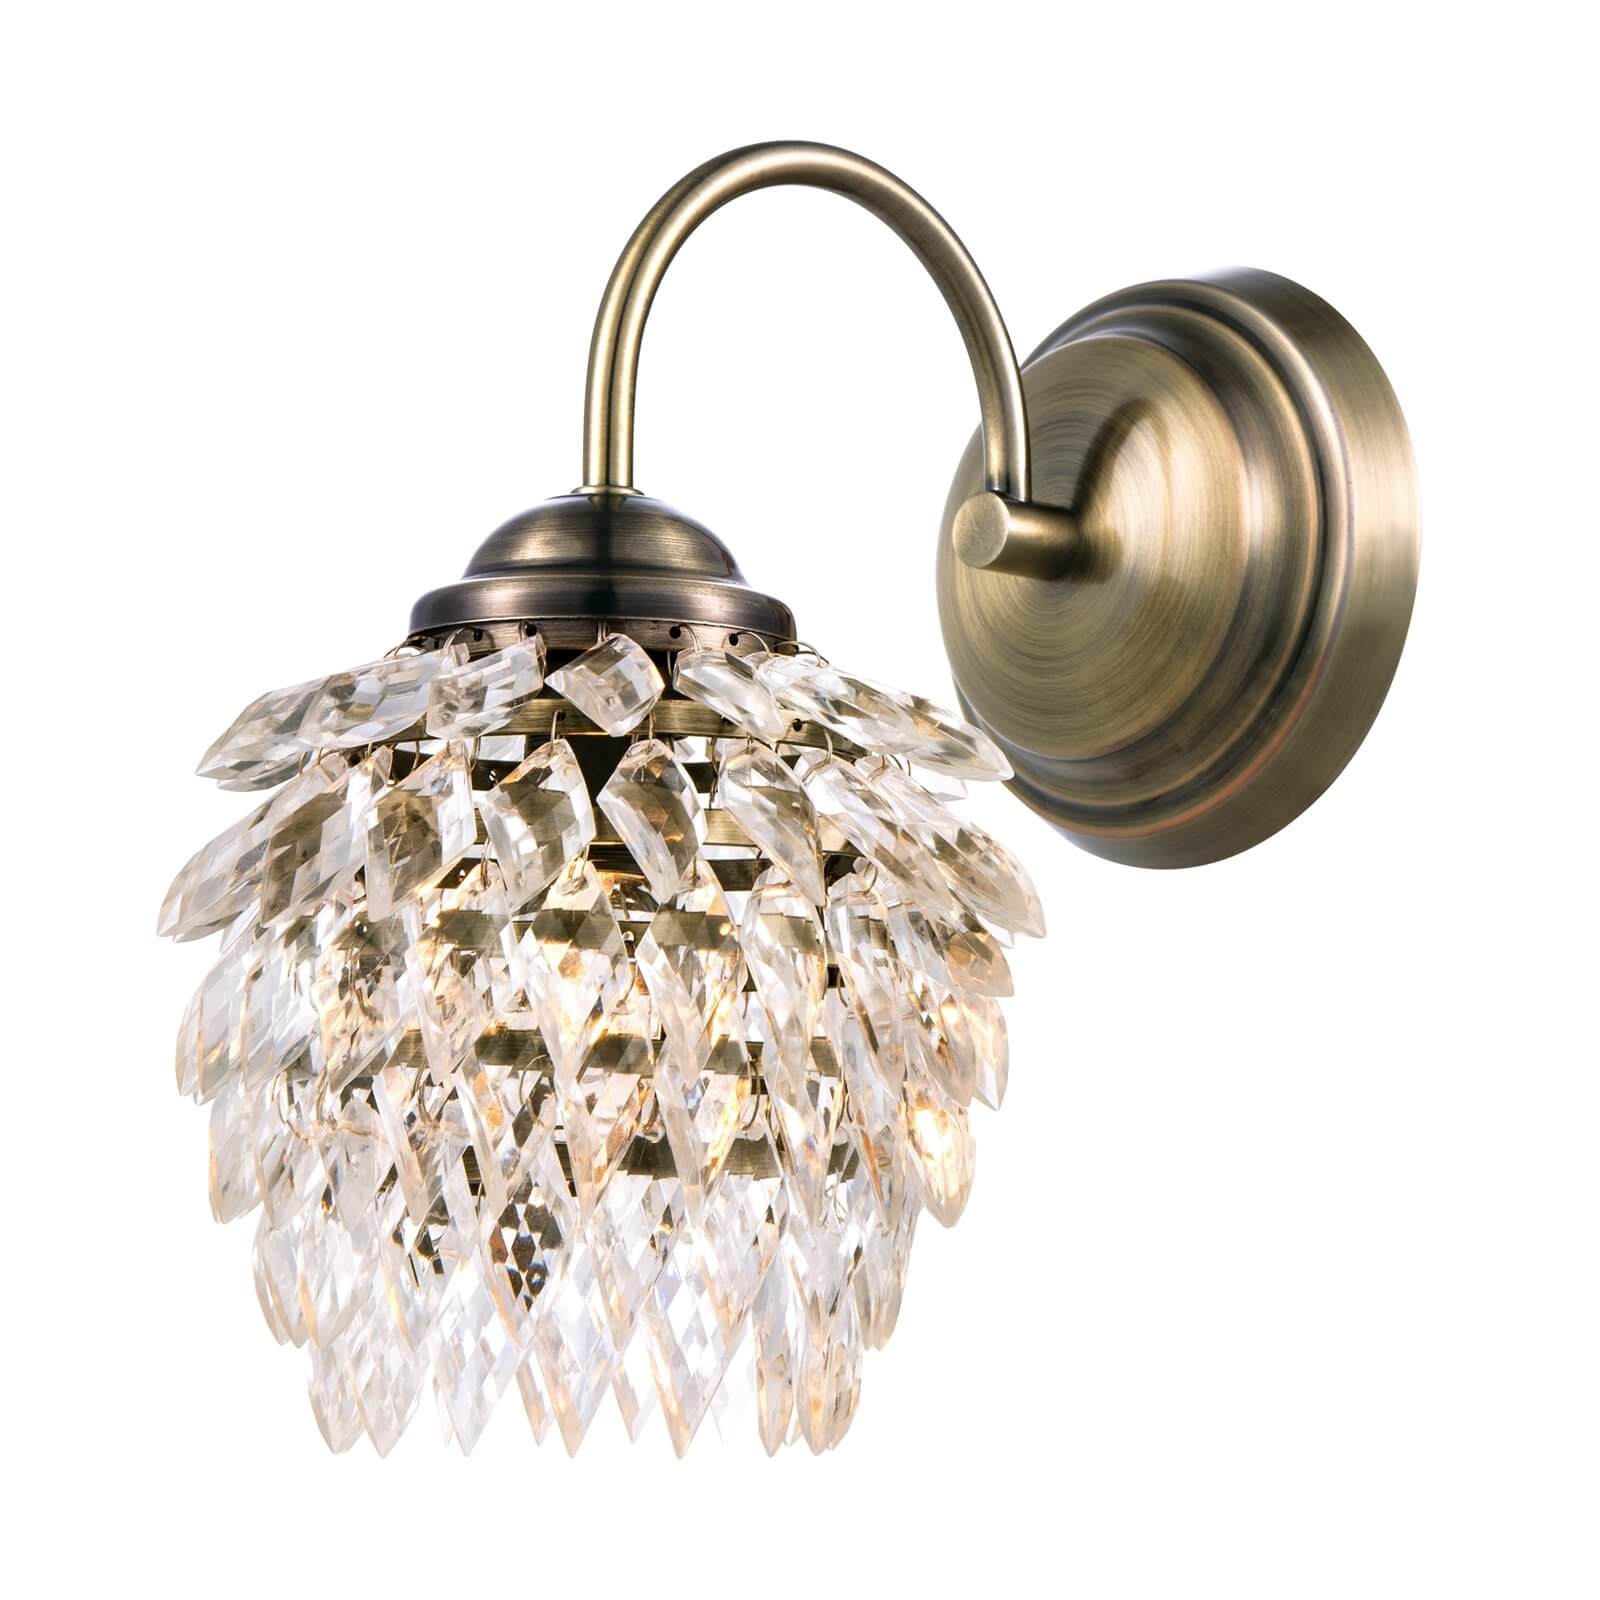 Blair Wall Lamp - Antique Brass